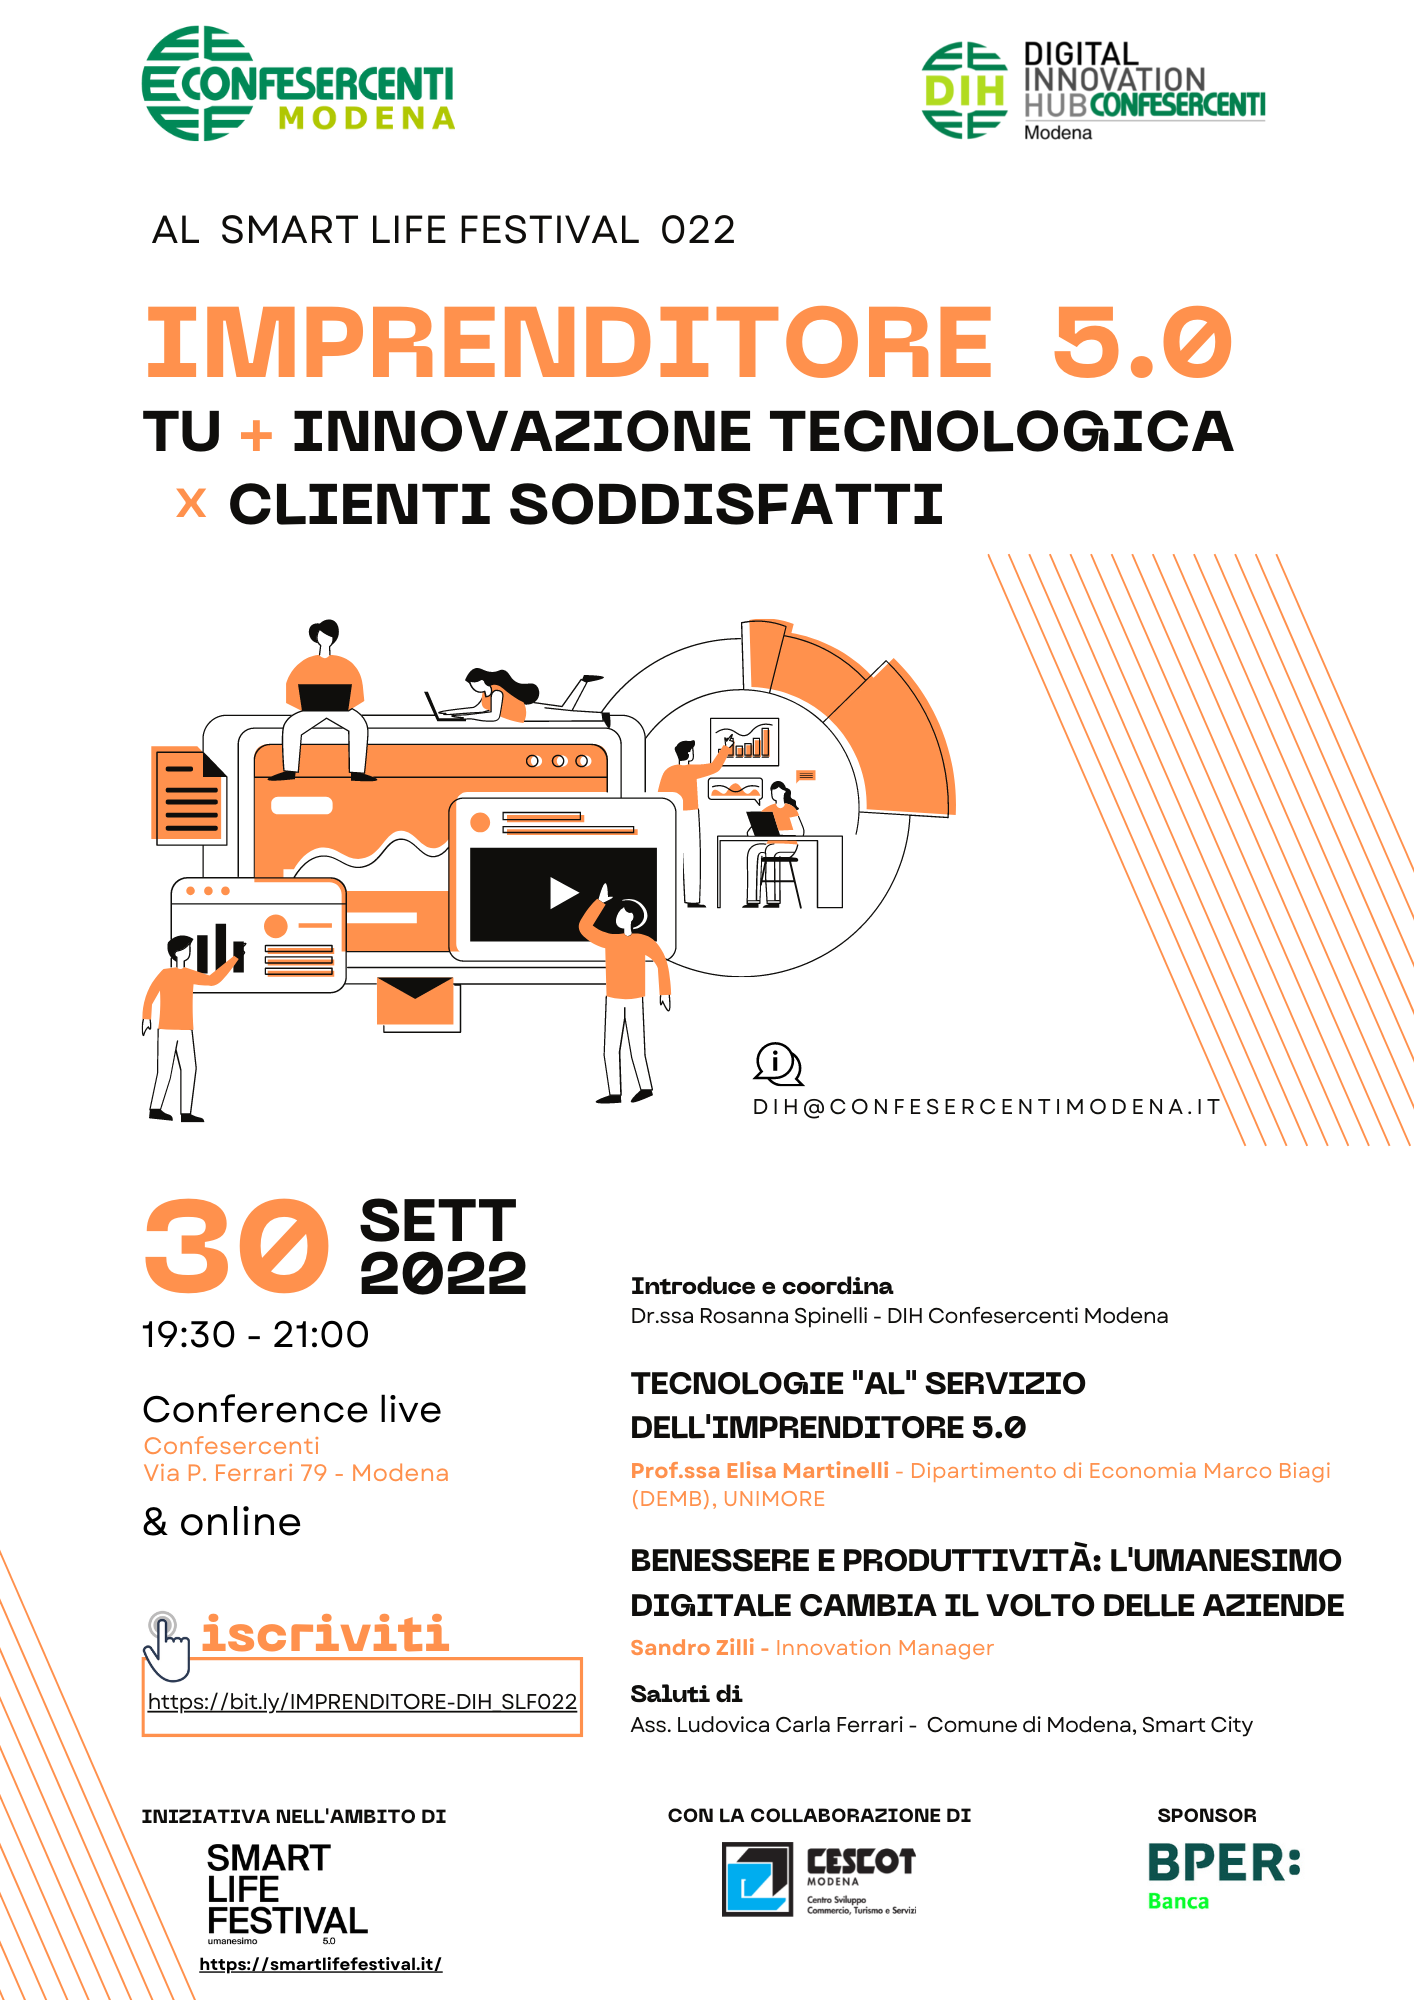 Confesercenti Modena, IMPRENDITORE 5.0: tu + innovazione tecnologica per clienti soddisfatti